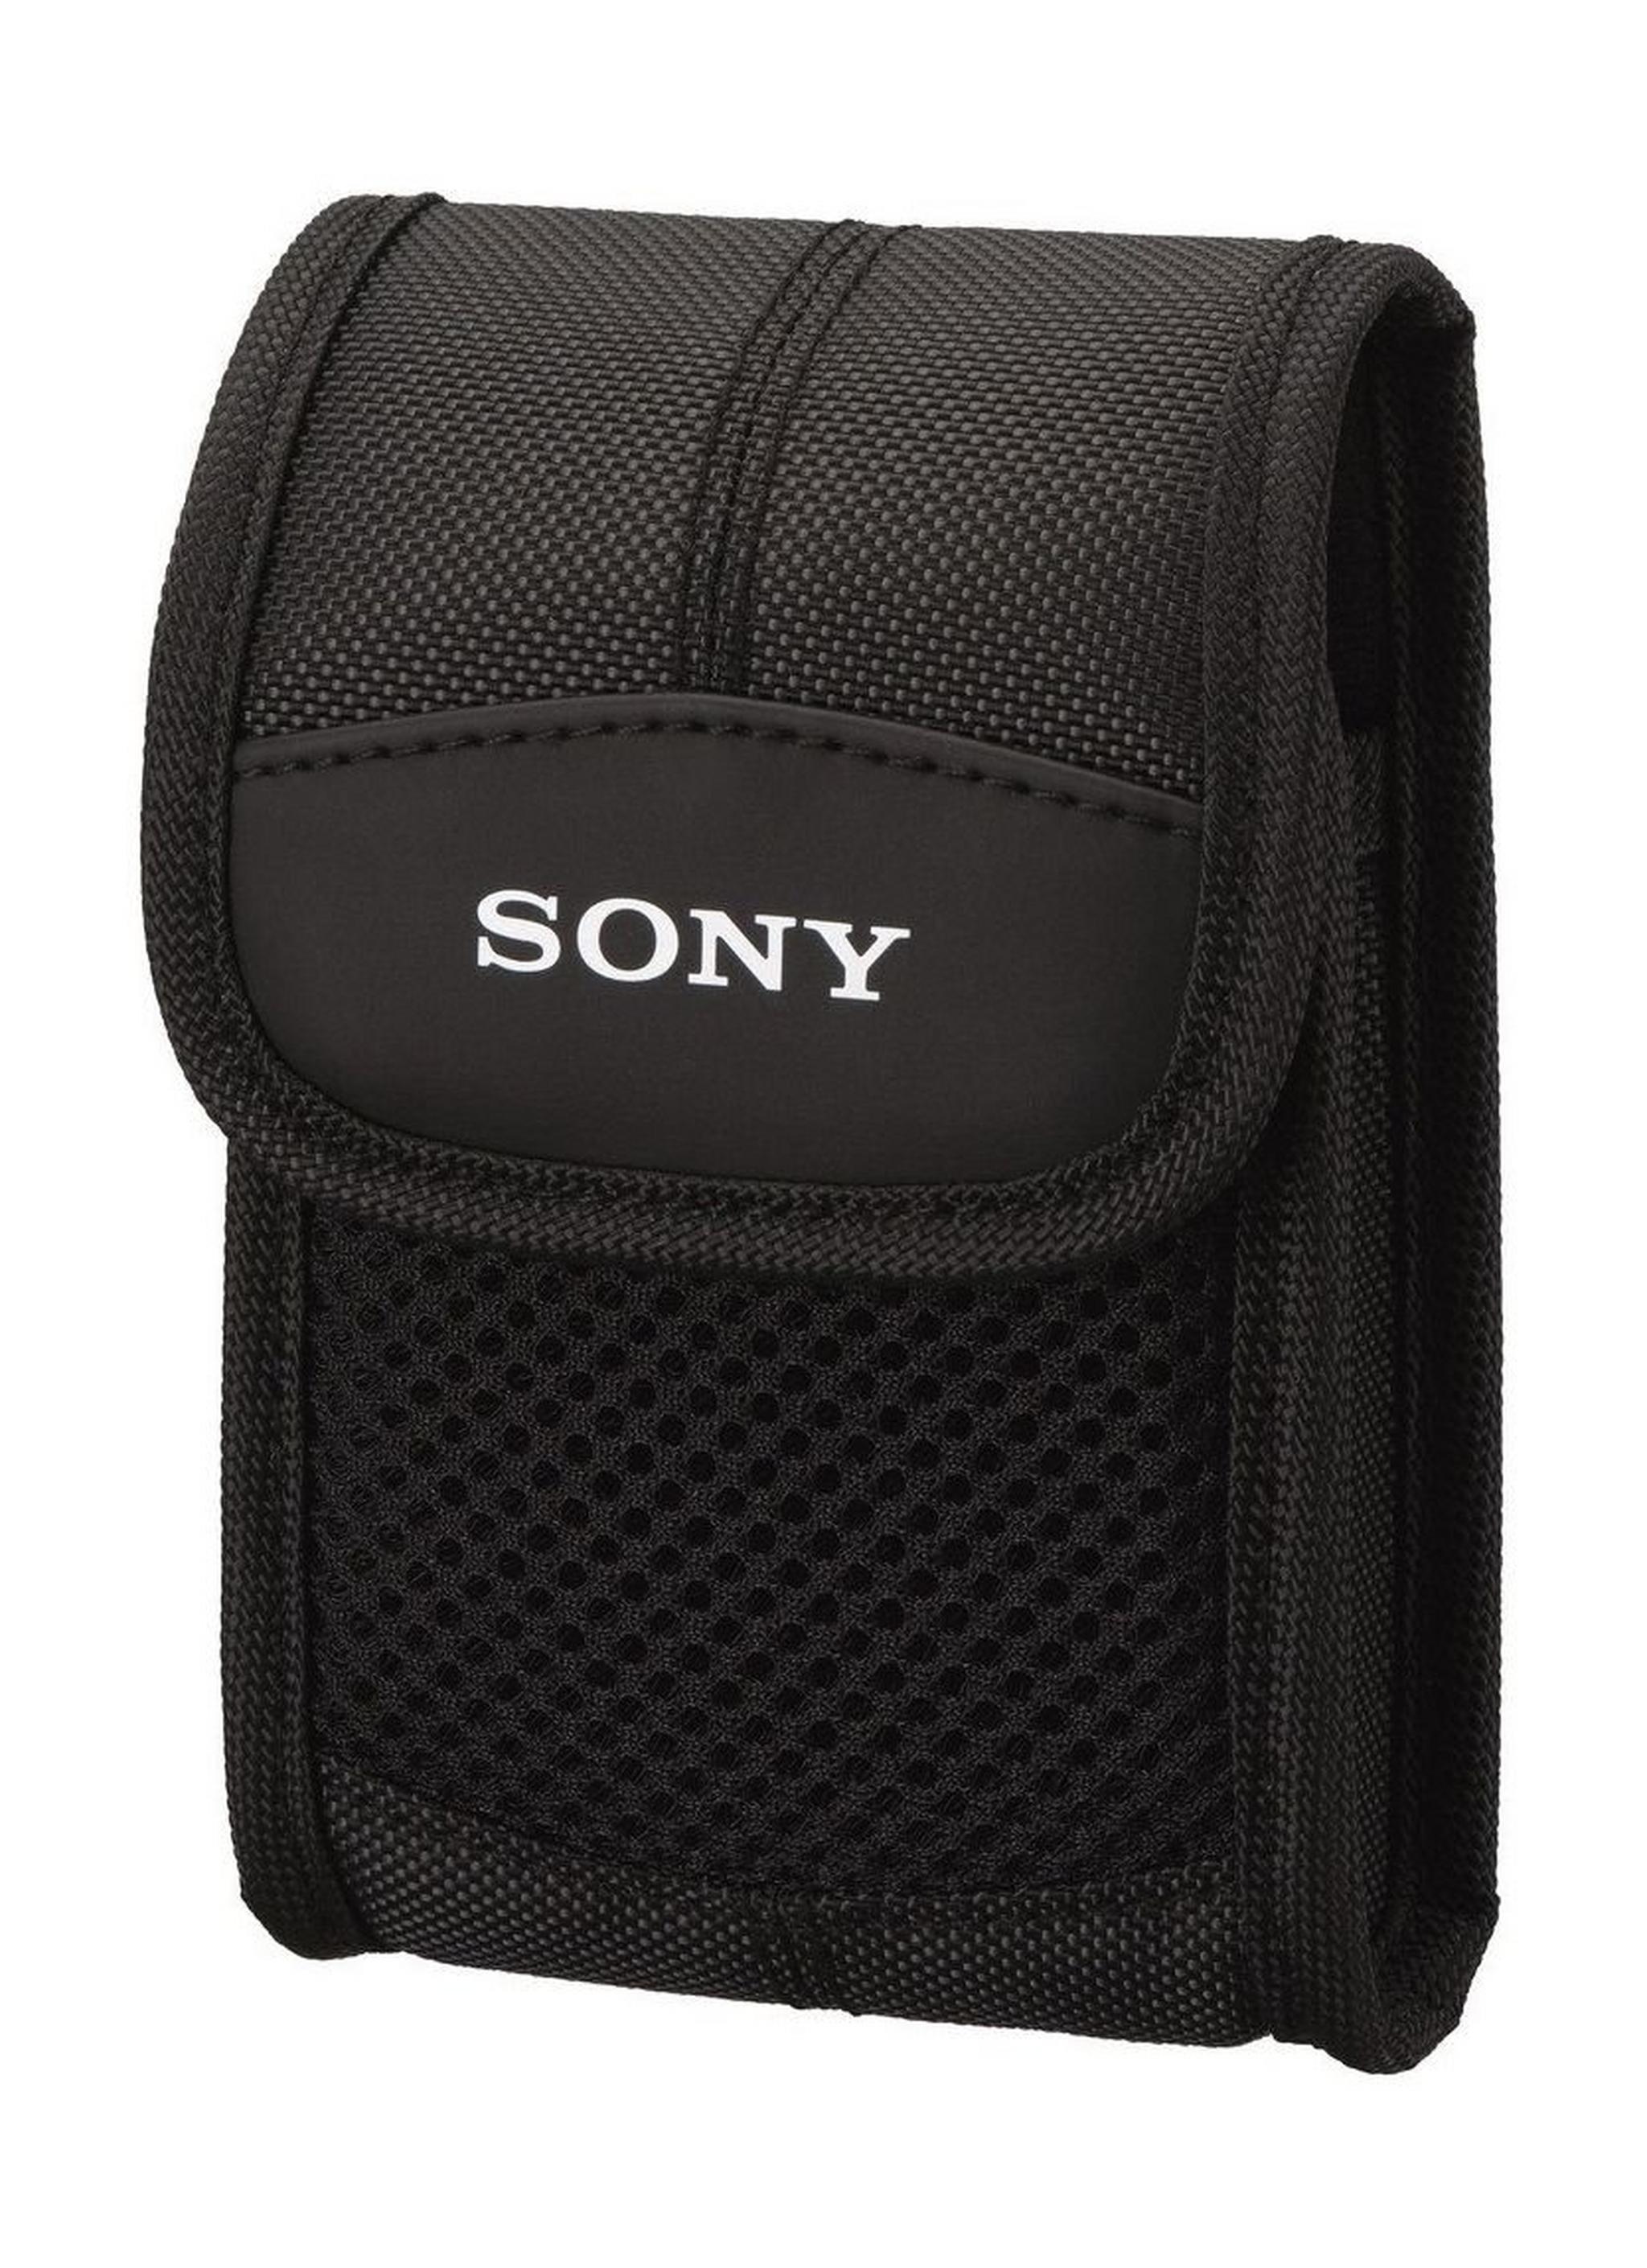 حقيبة سوني لحمل الكاميرا الصغيرة (LCS-BDE)  - أسود